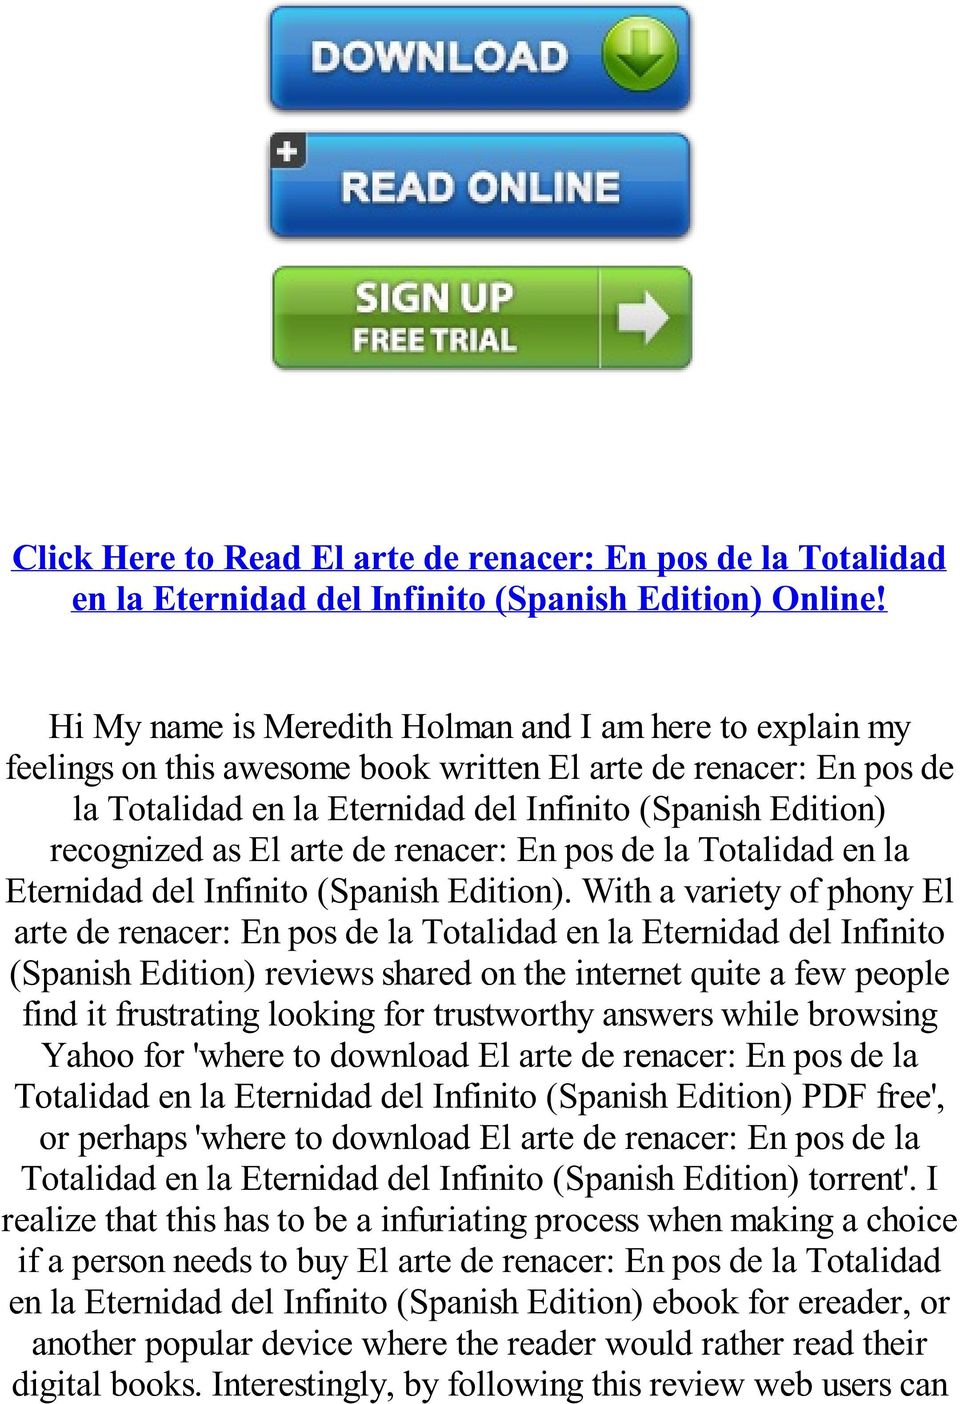 El arte de renacer: En pos de la Totalidad en la Eternidad del Infinito (Spanish Edition).